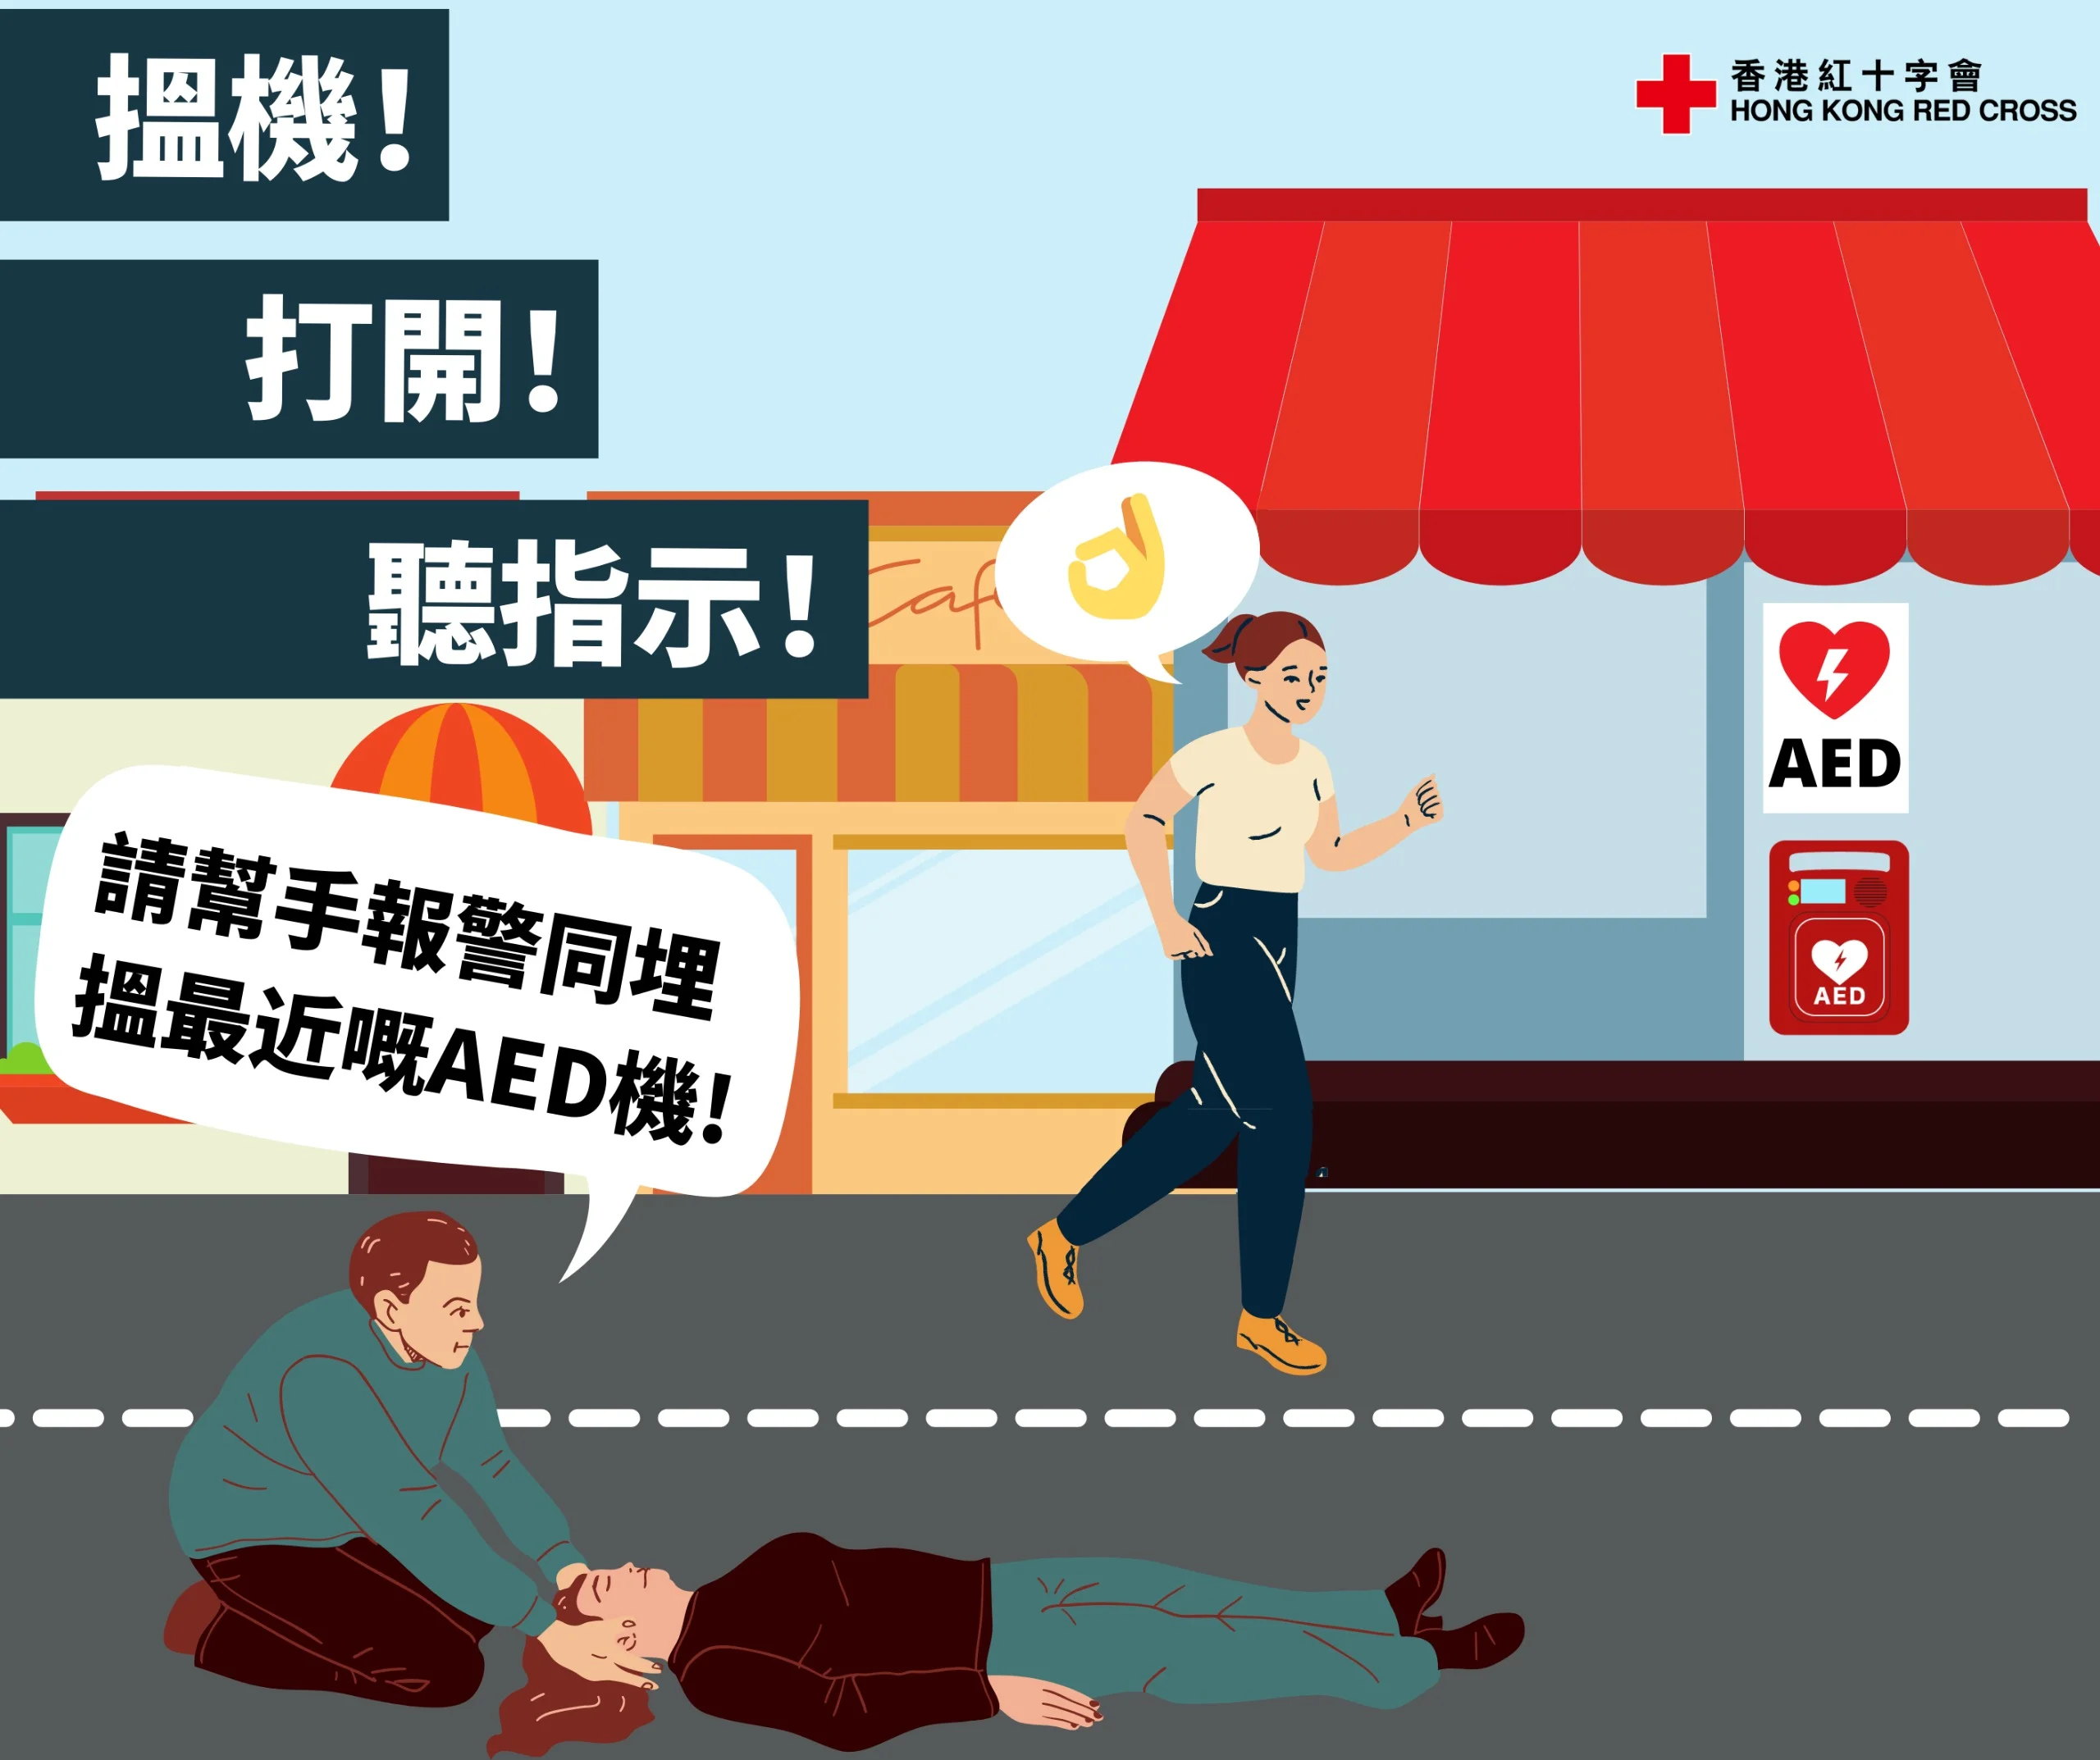 AED應安裝在人多聚集和高風險的地方，讓市民在緊急情況下能夠盡快取用。